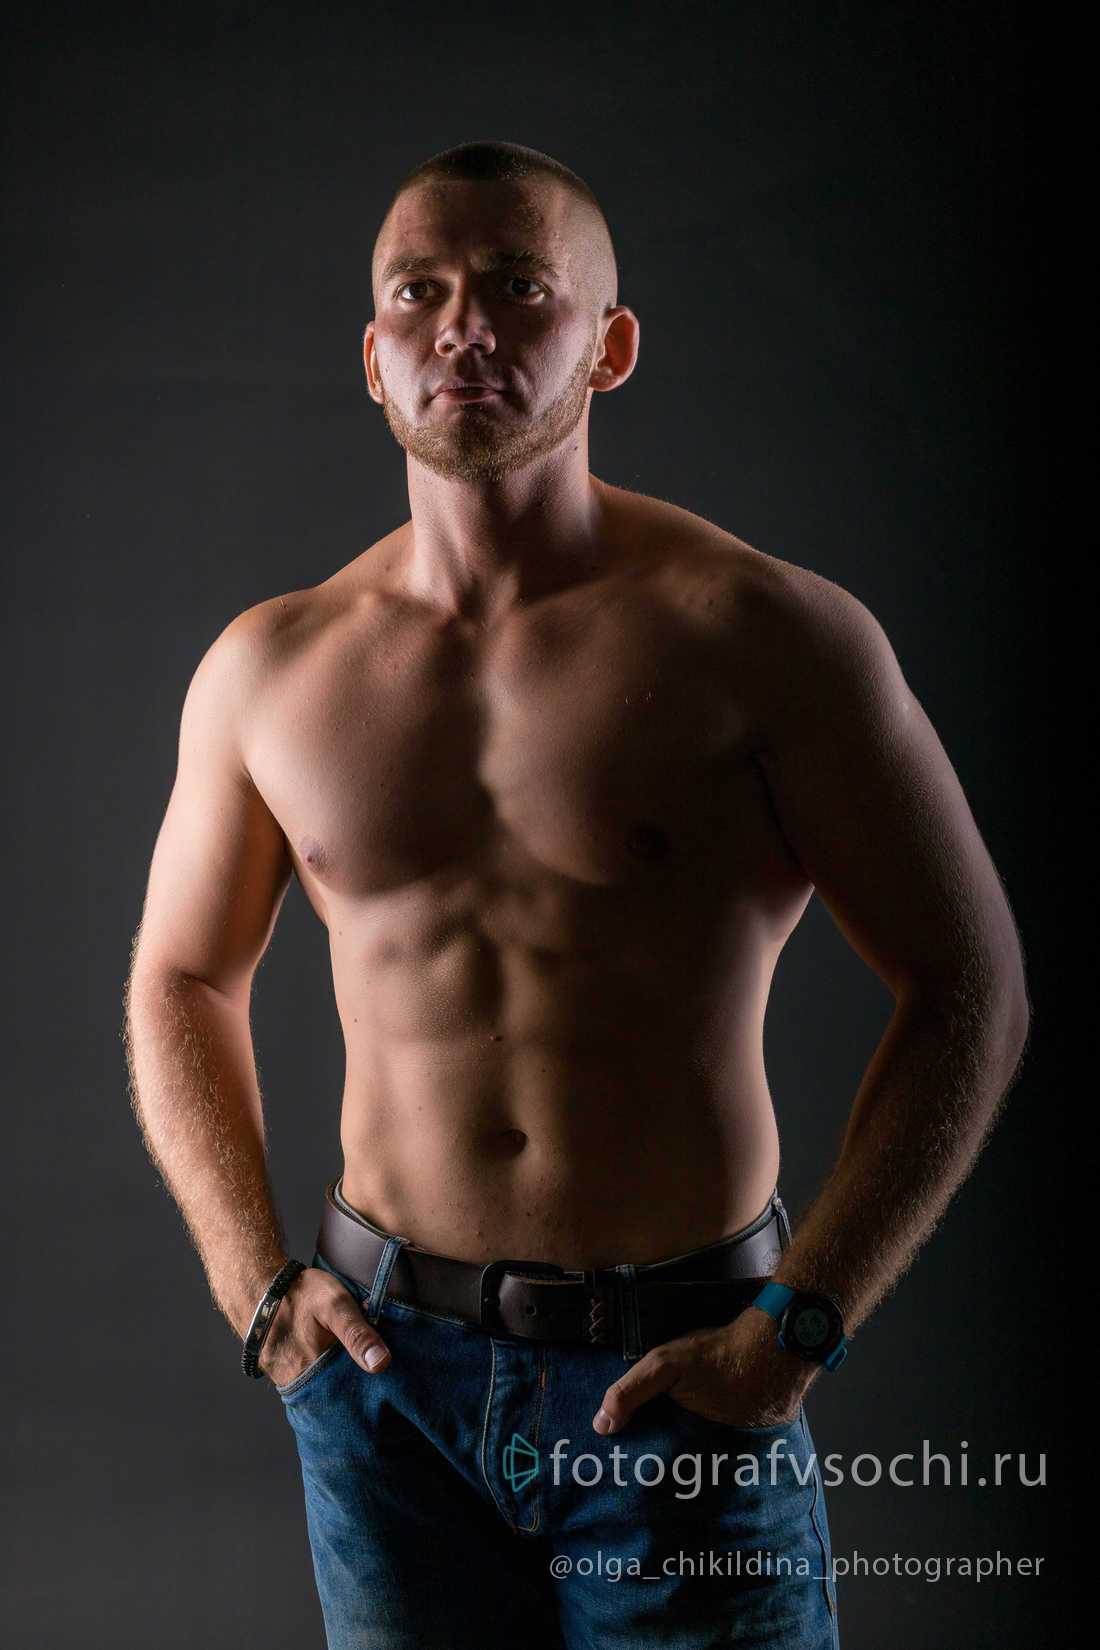 Портрет парня с голым торсом спортивного телосложения